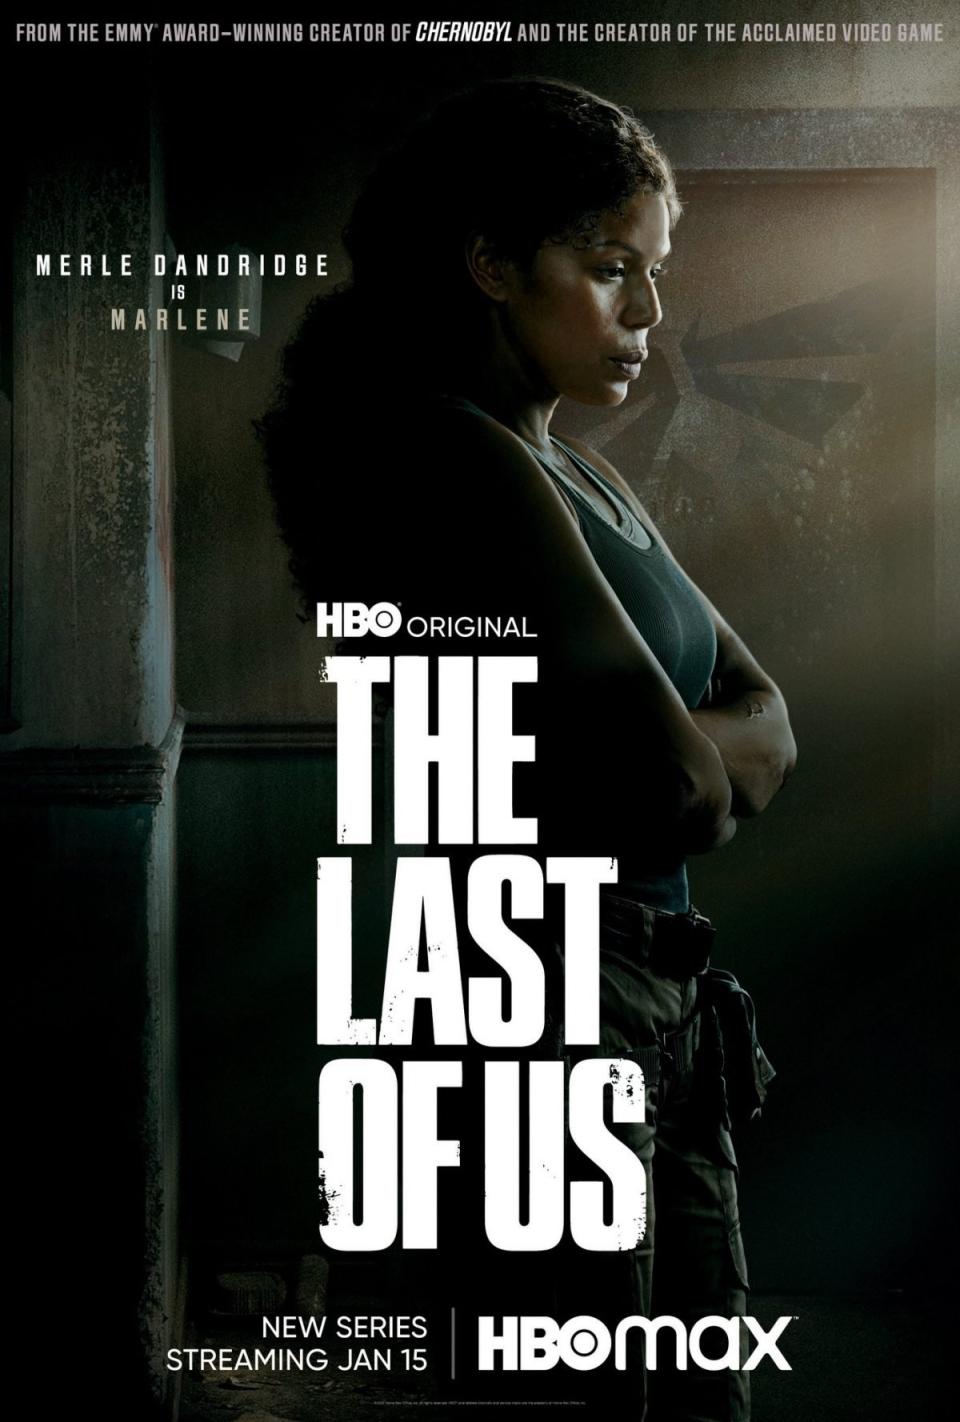 Merle Dandridge as Marlene from The Last of Us series on HBO Max